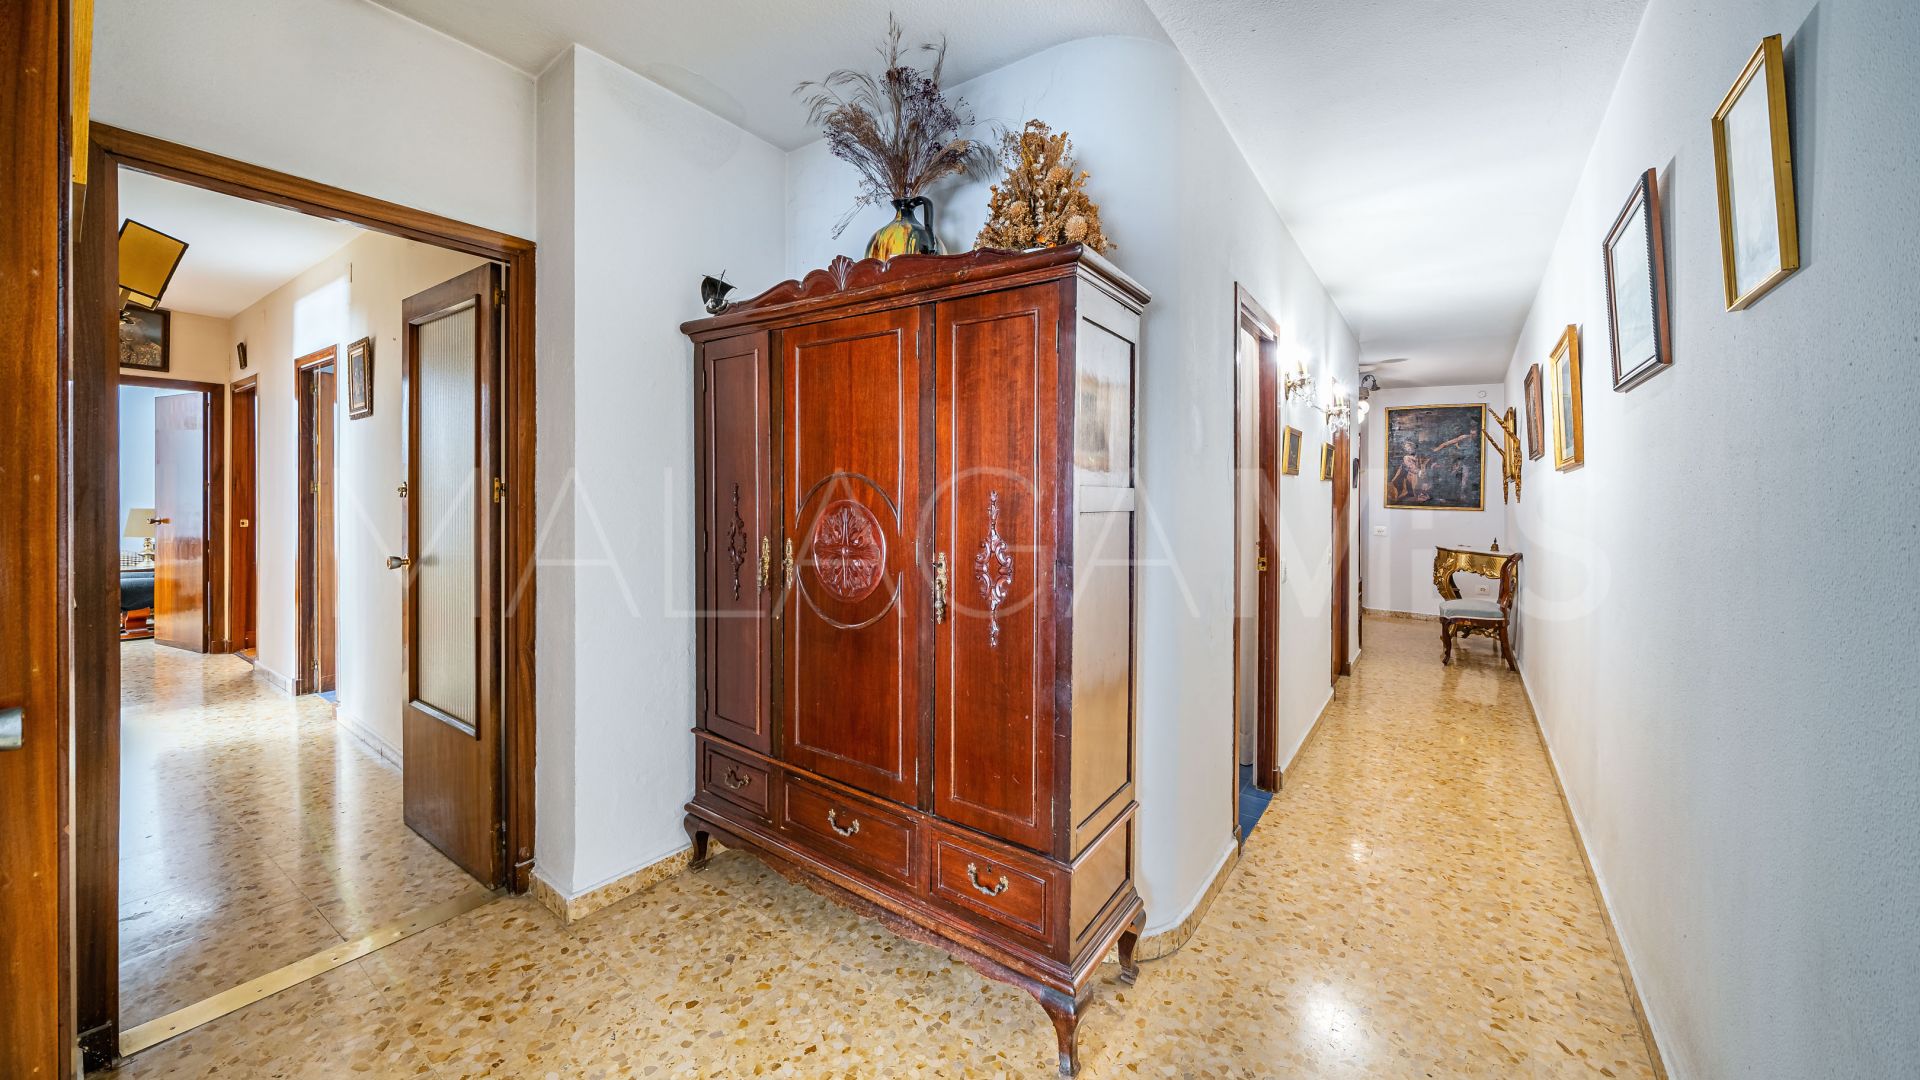 La Malagueta - La Caleta 4 bedrooms flat for sale